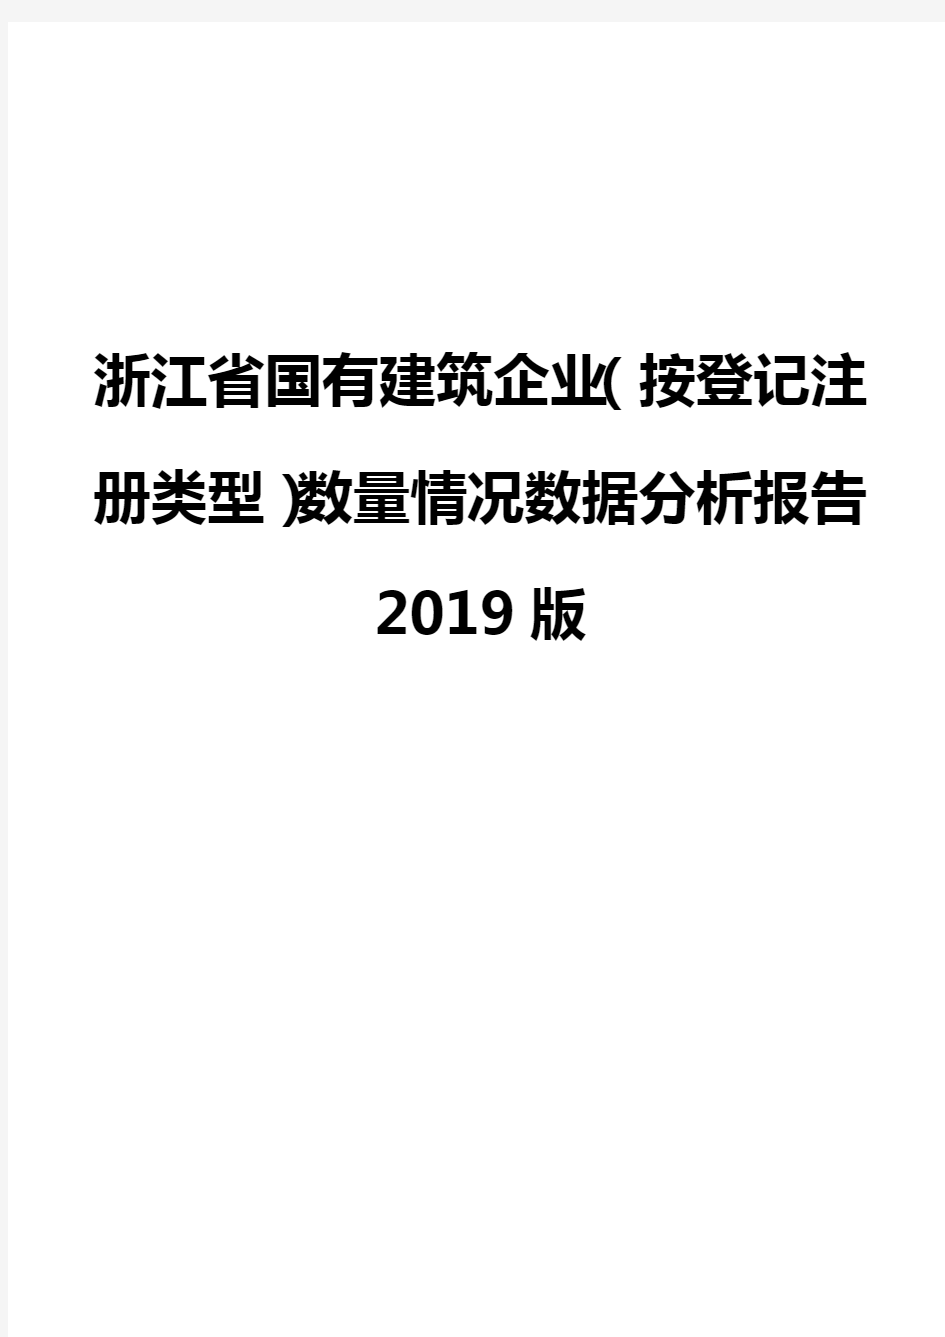 浙江省国有建筑企业(按登记注册类型)数量情况数据分析报告2019版